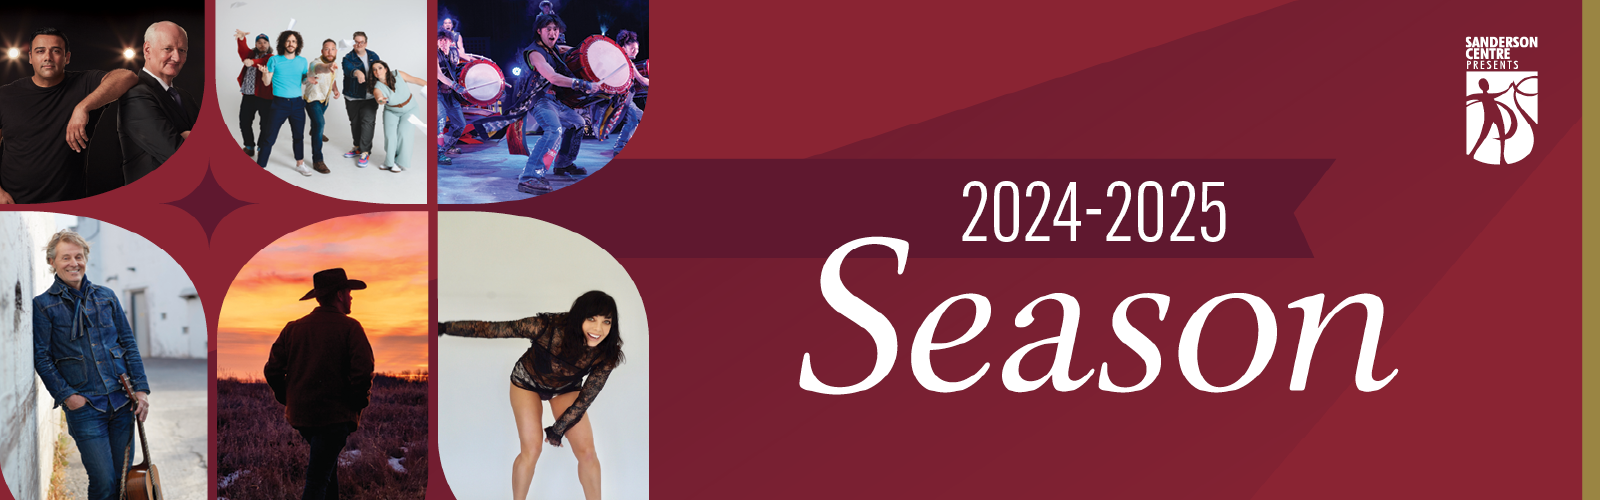 Sanderson Centre 2024-2025 Season